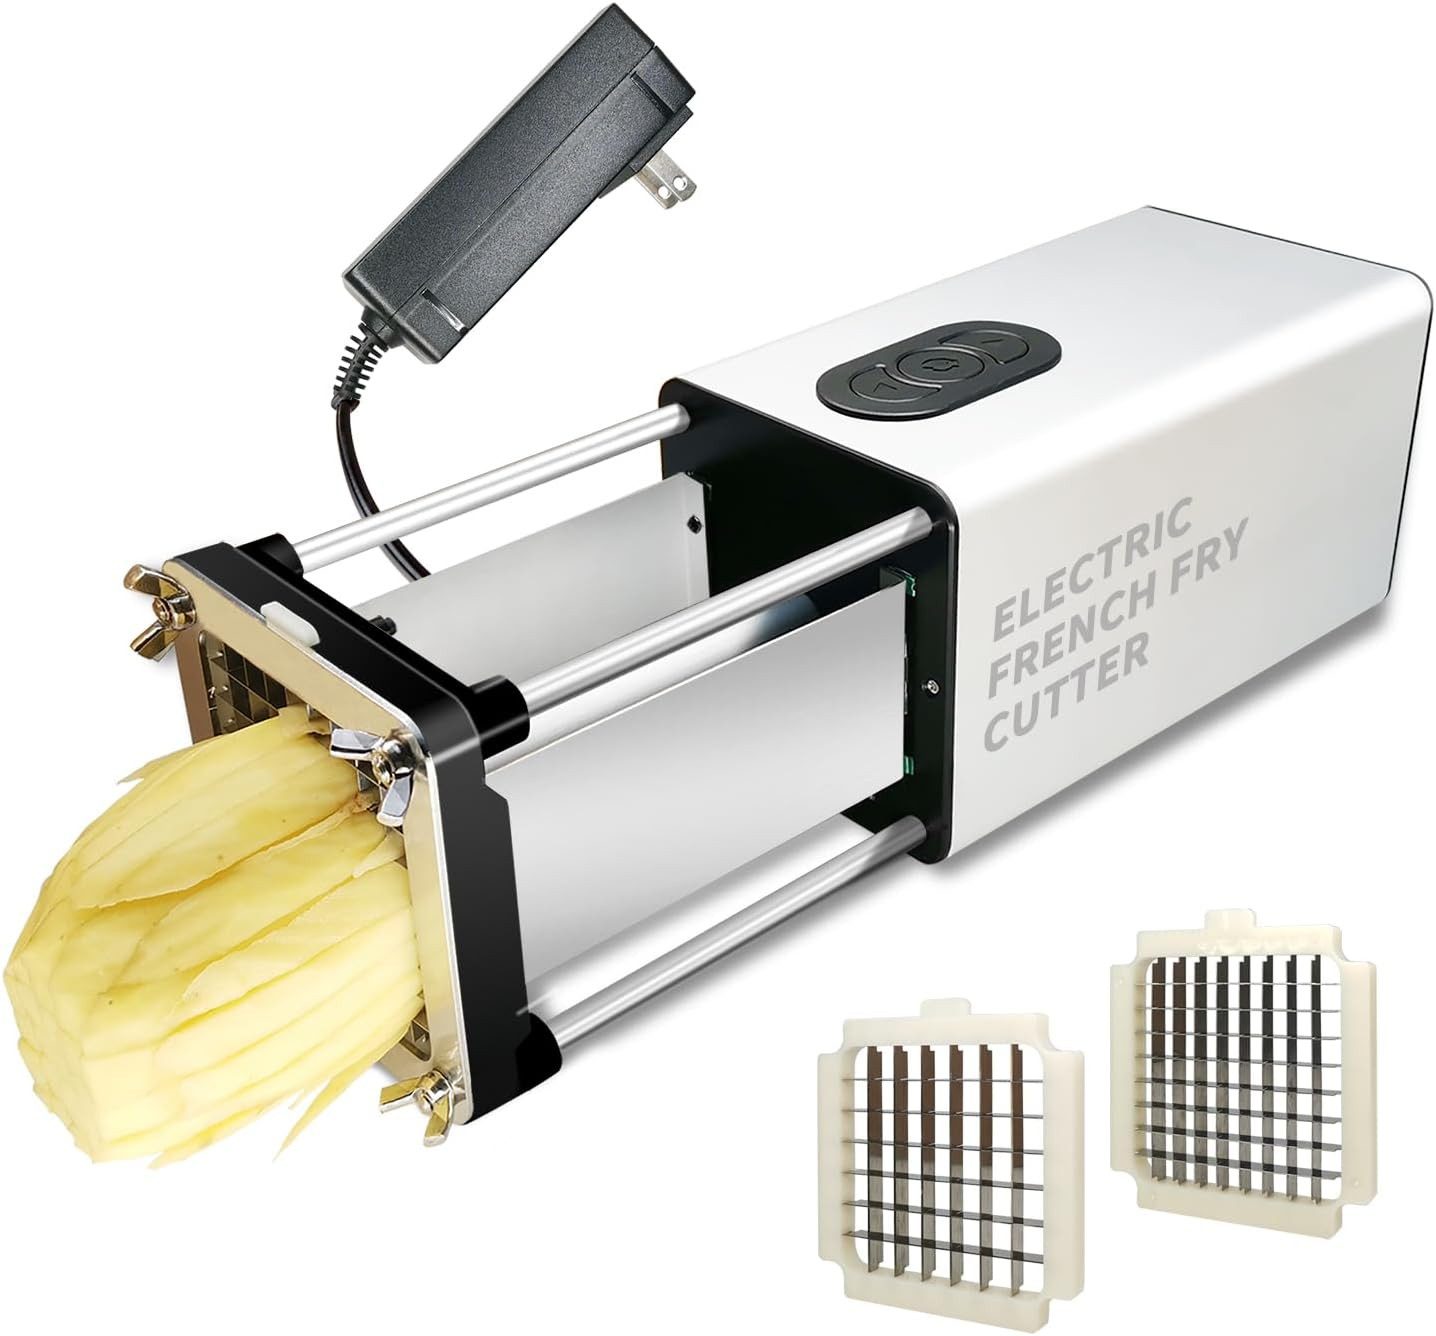 Fstcrt Pommesschneider Elektrischer Kartoffelschneider, Hochwertige scharfe Klingen, einfach und sicher, platzsparend